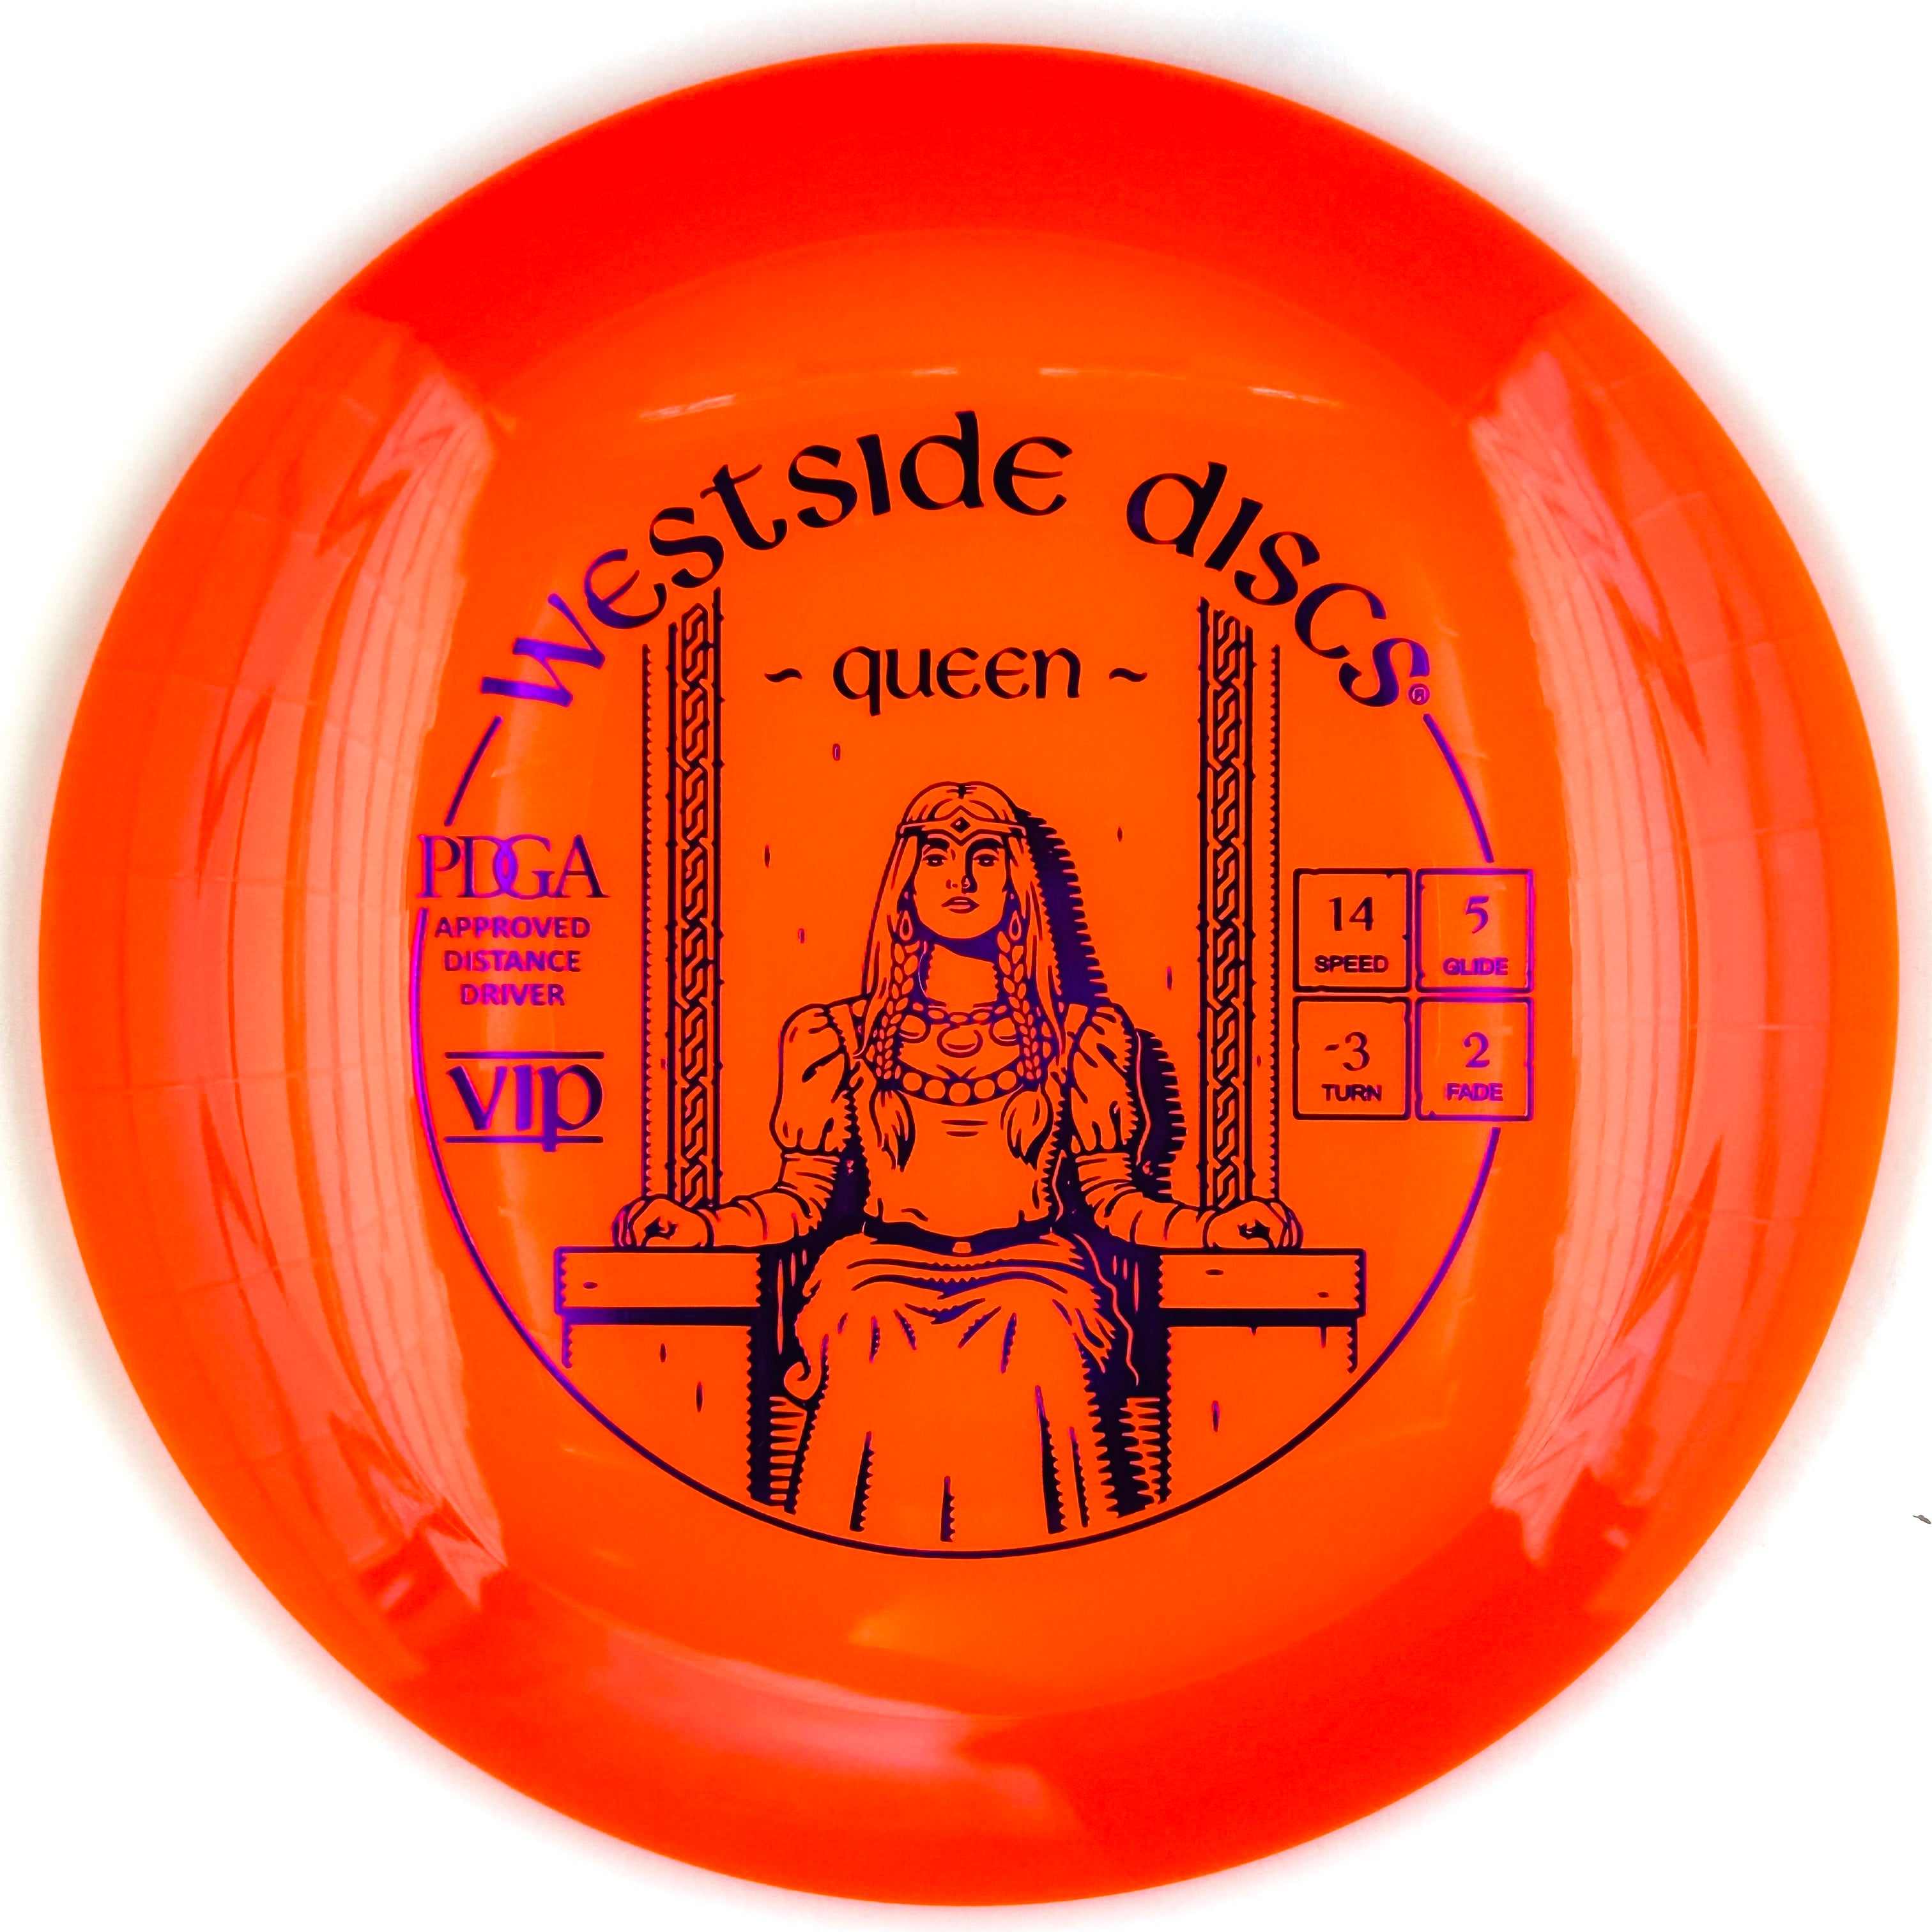 Westside Discs VIP Queen (Distance Driver)